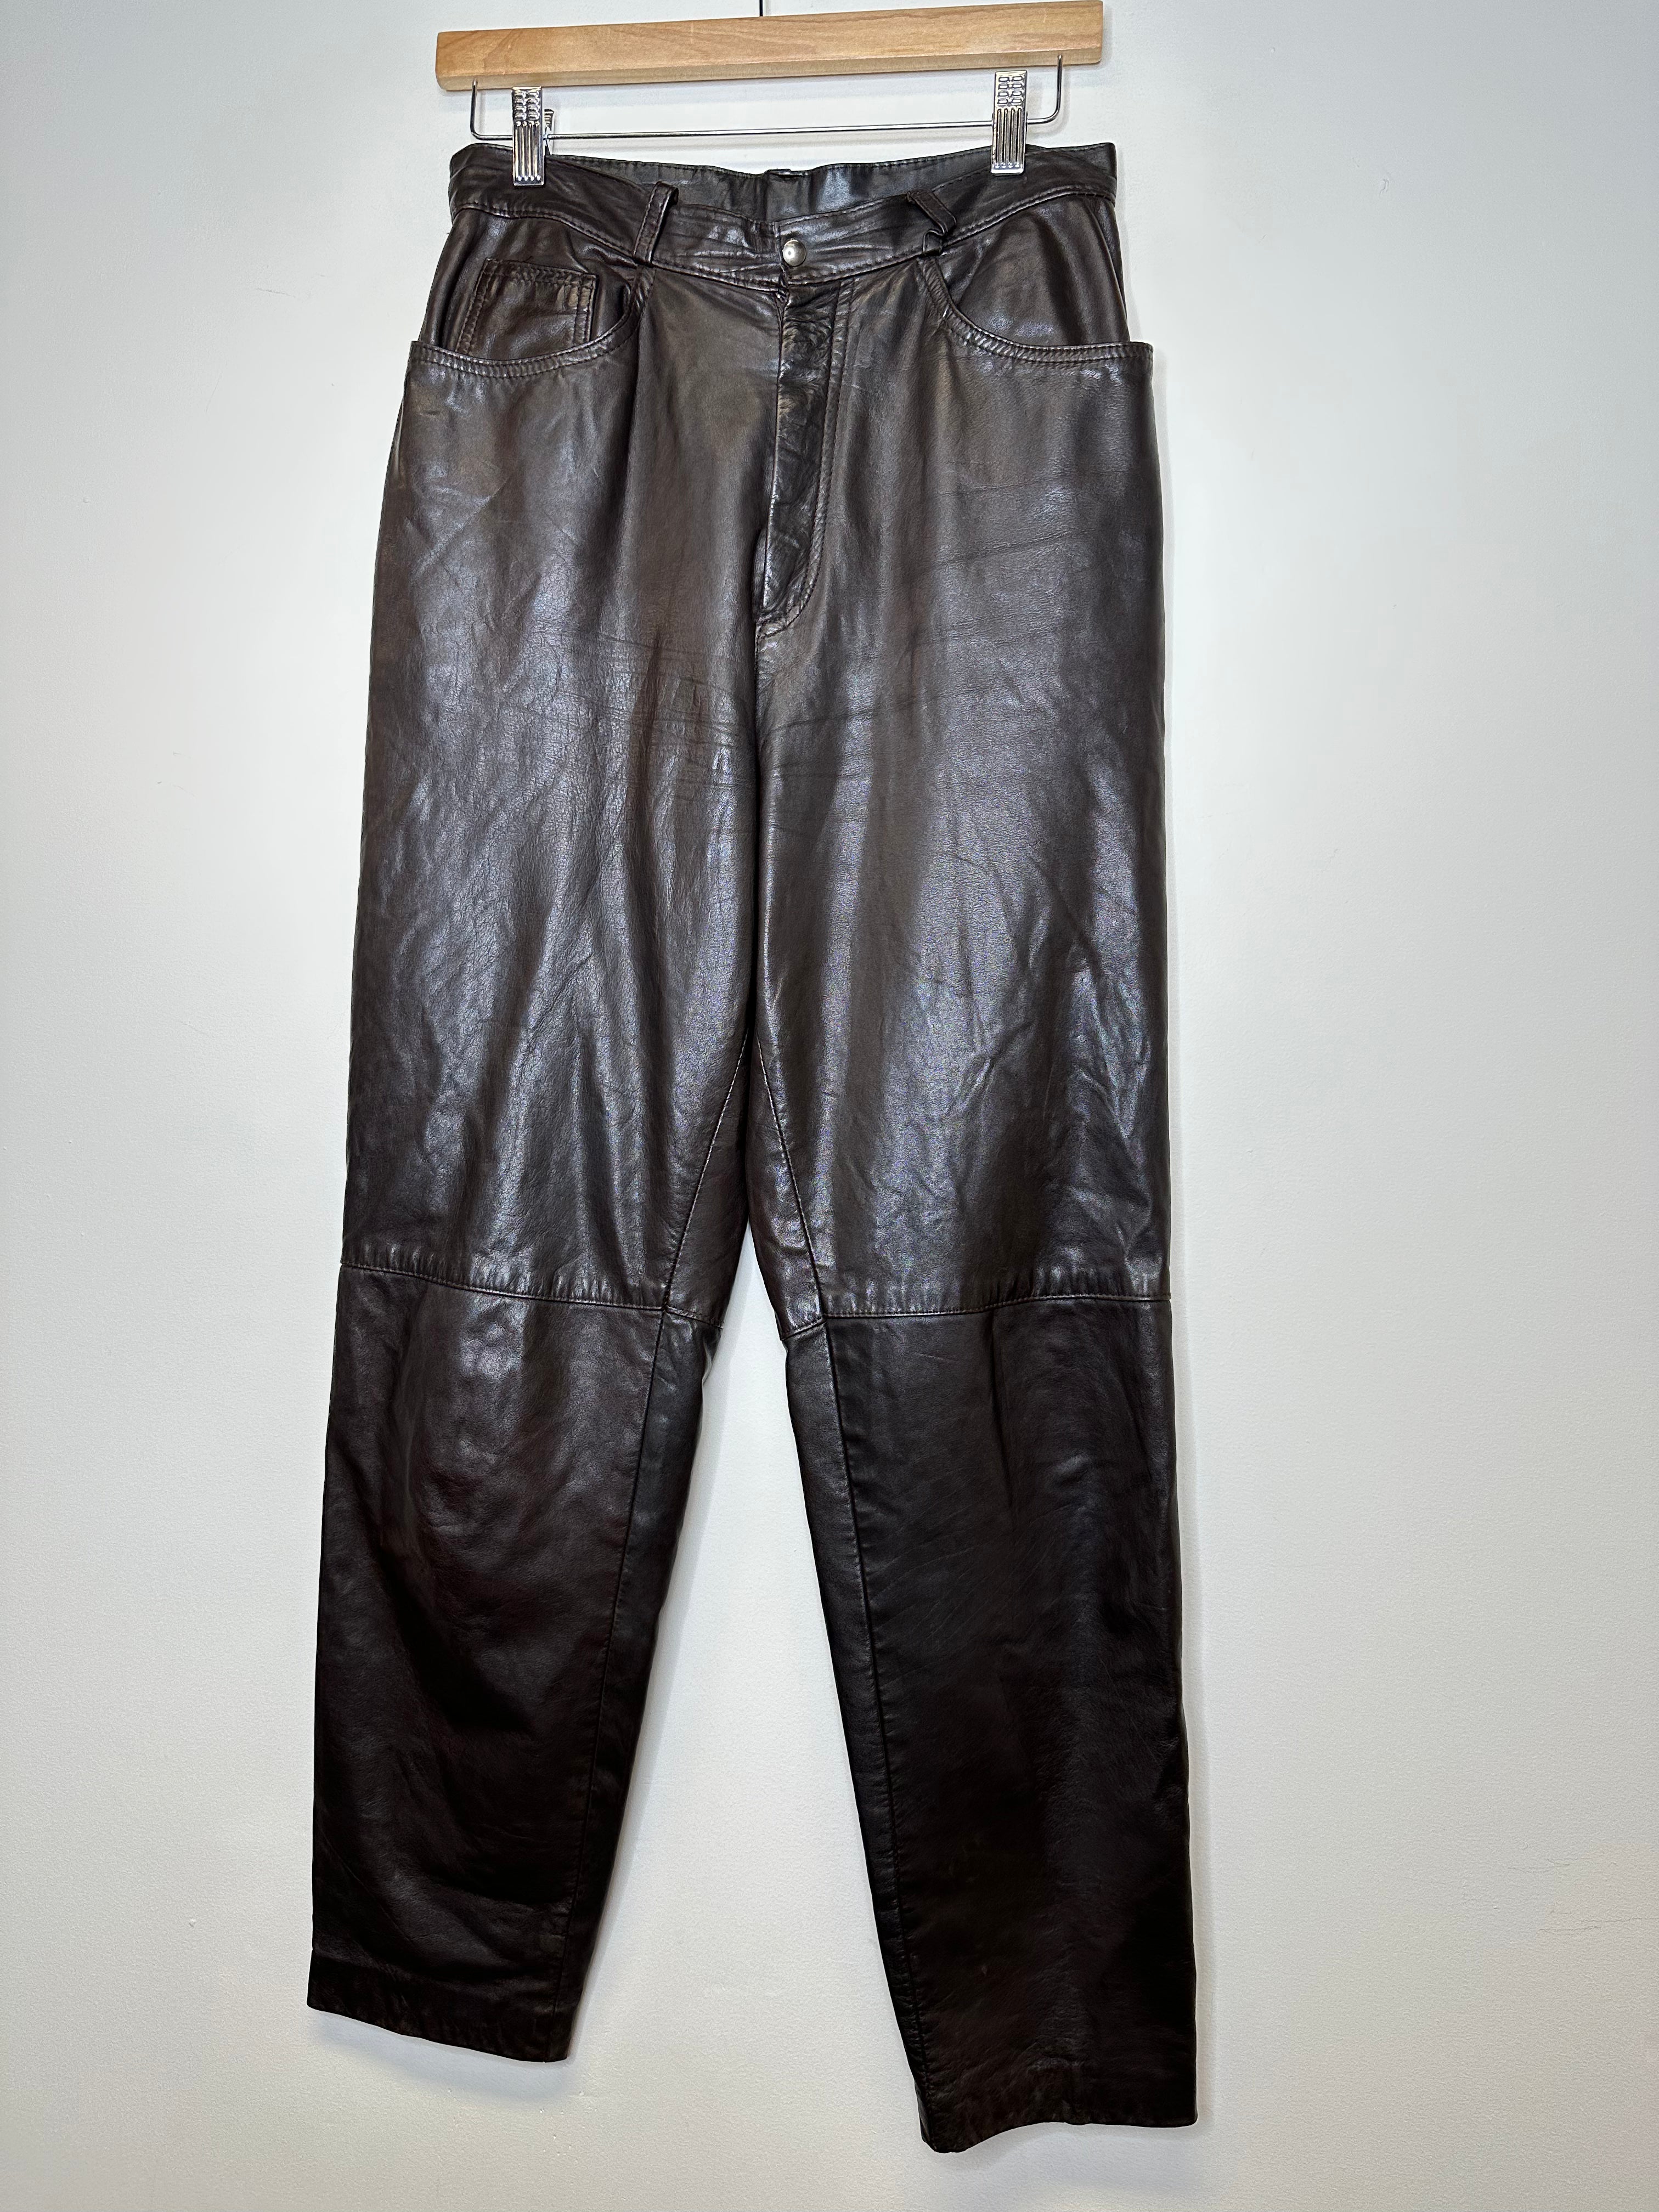 Vintage Brown Leather Pants - M/29